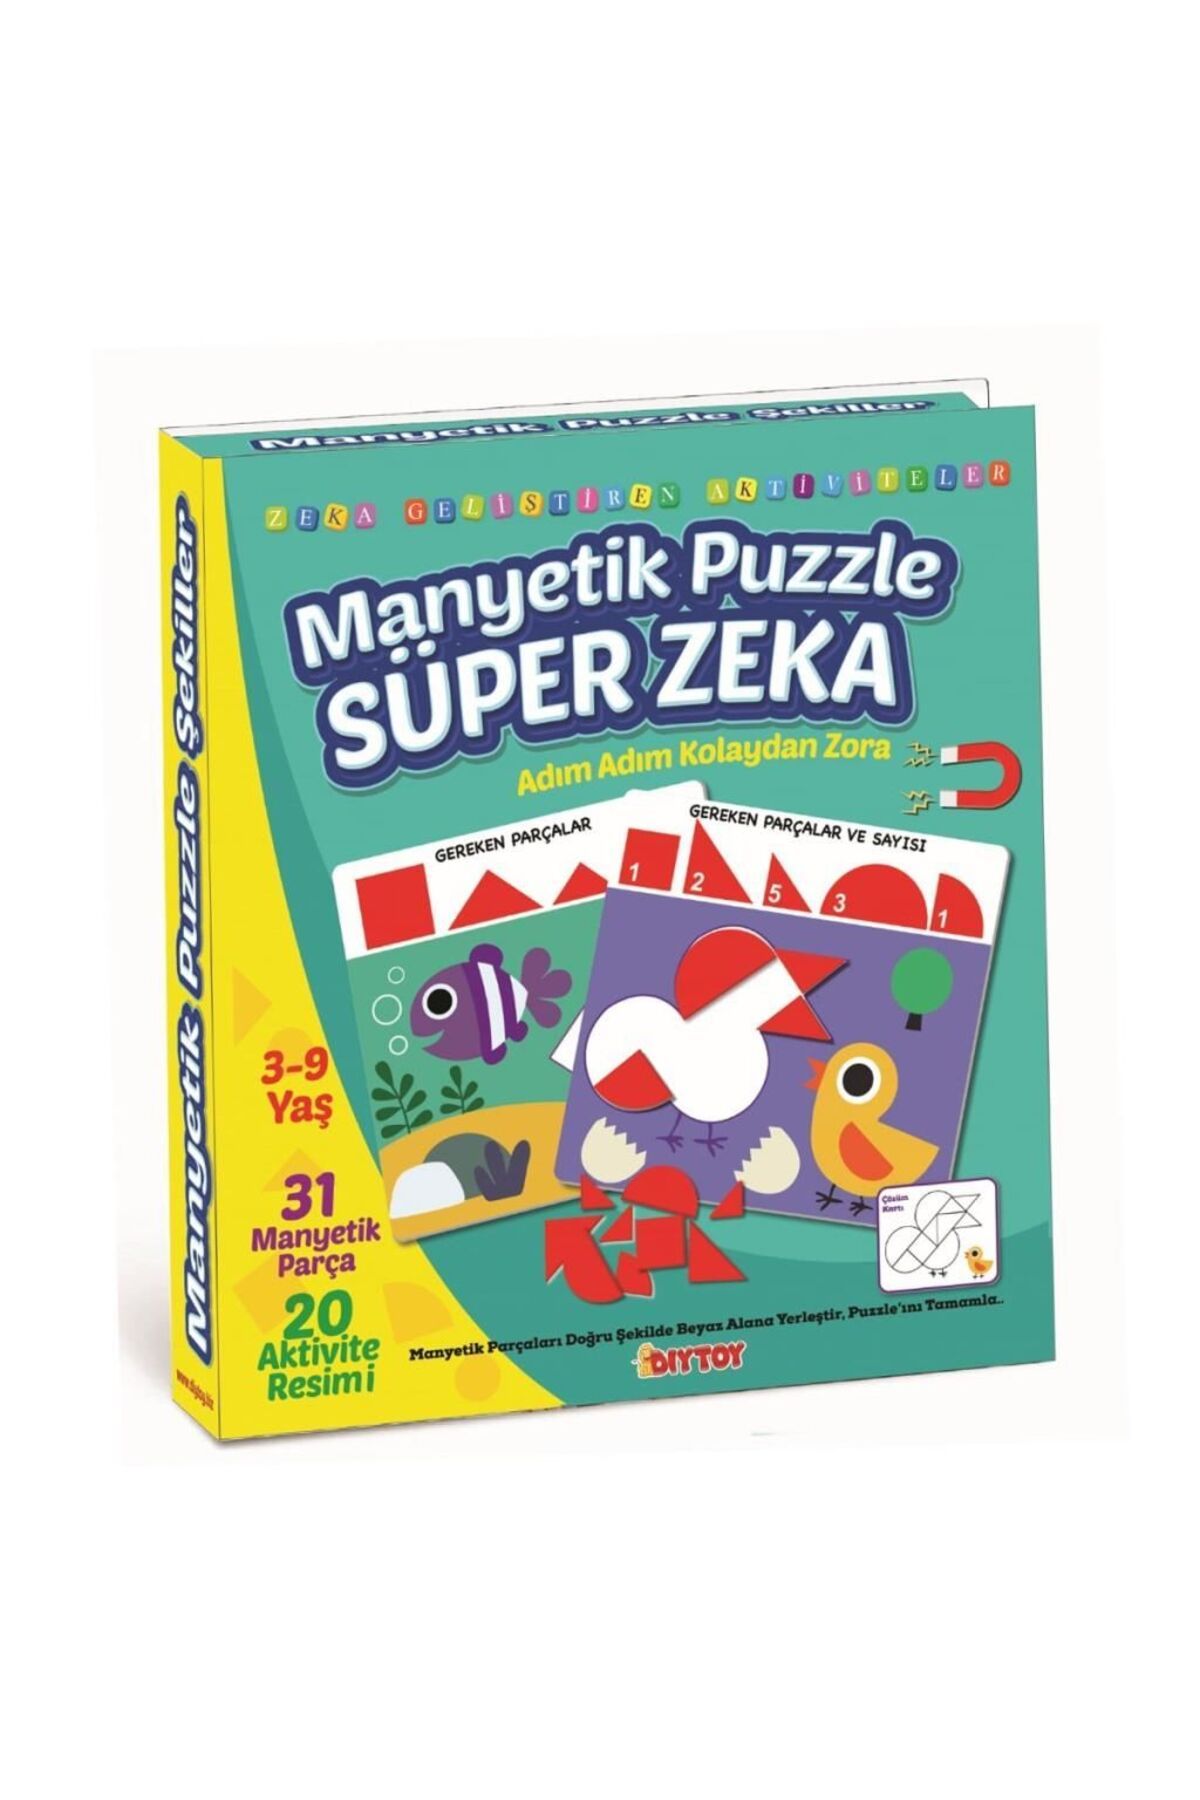 DIY Toys 1536 DıyToy Manyetik Puzzle - Super Zeka / 31 Parça Puzzle / 3-9 yaş